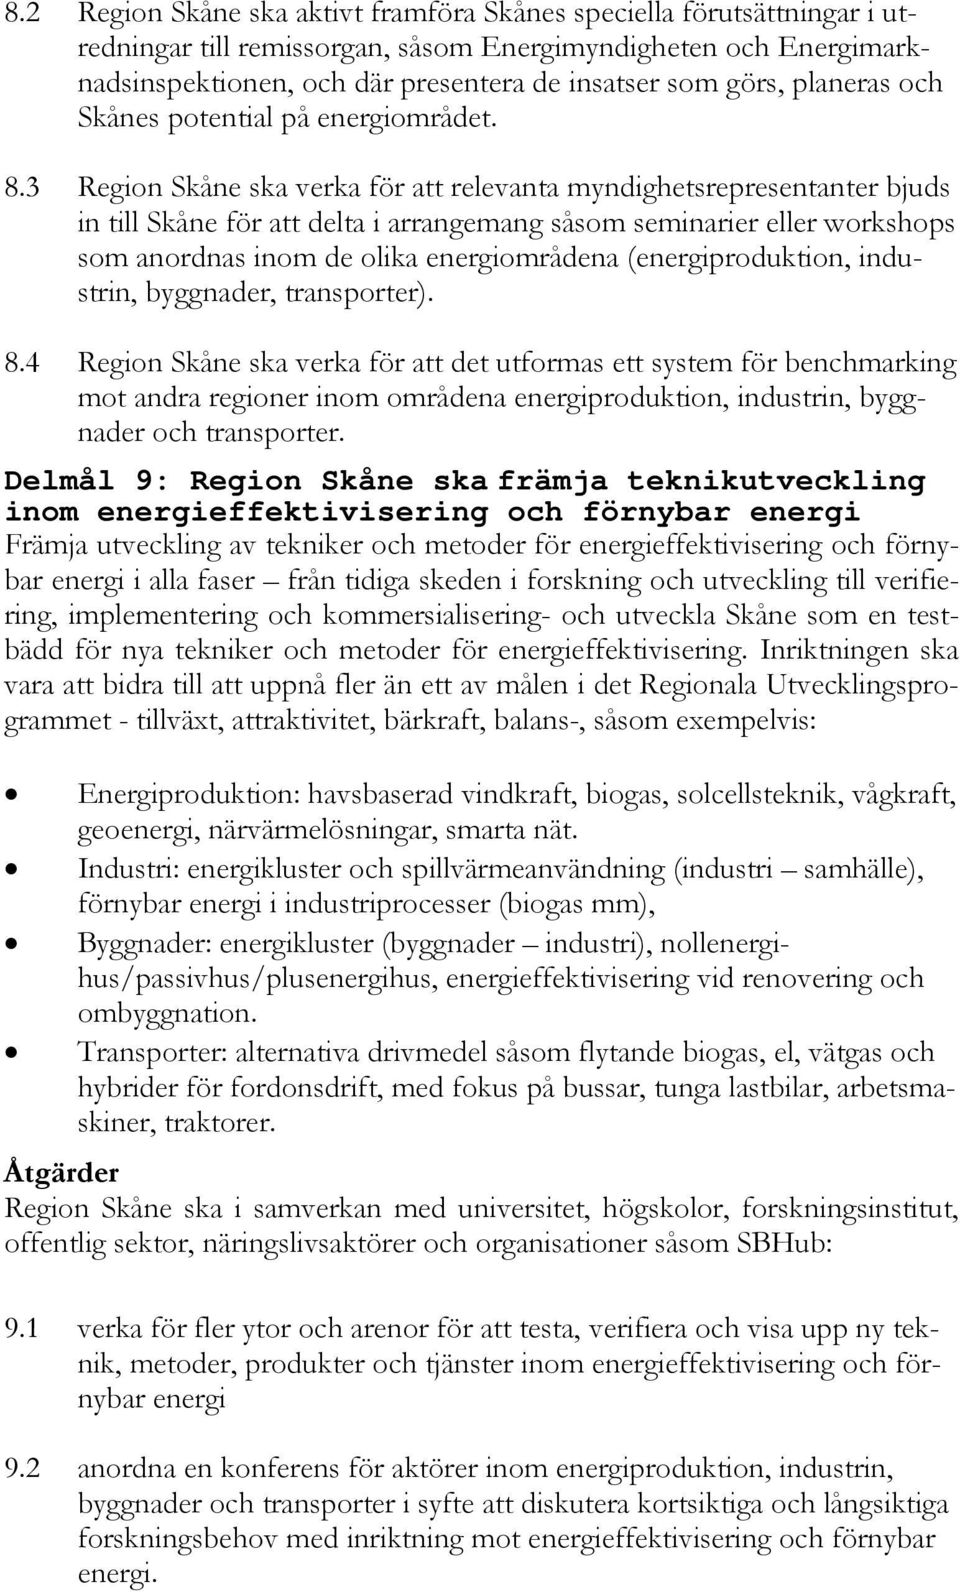 3 Region Skåne ska verka för att relevanta myndighetsrepresentanter bjuds in till Skåne för att delta i arrangemang såsom seminarier eller workshops som anordnas inom de olika energiområdena